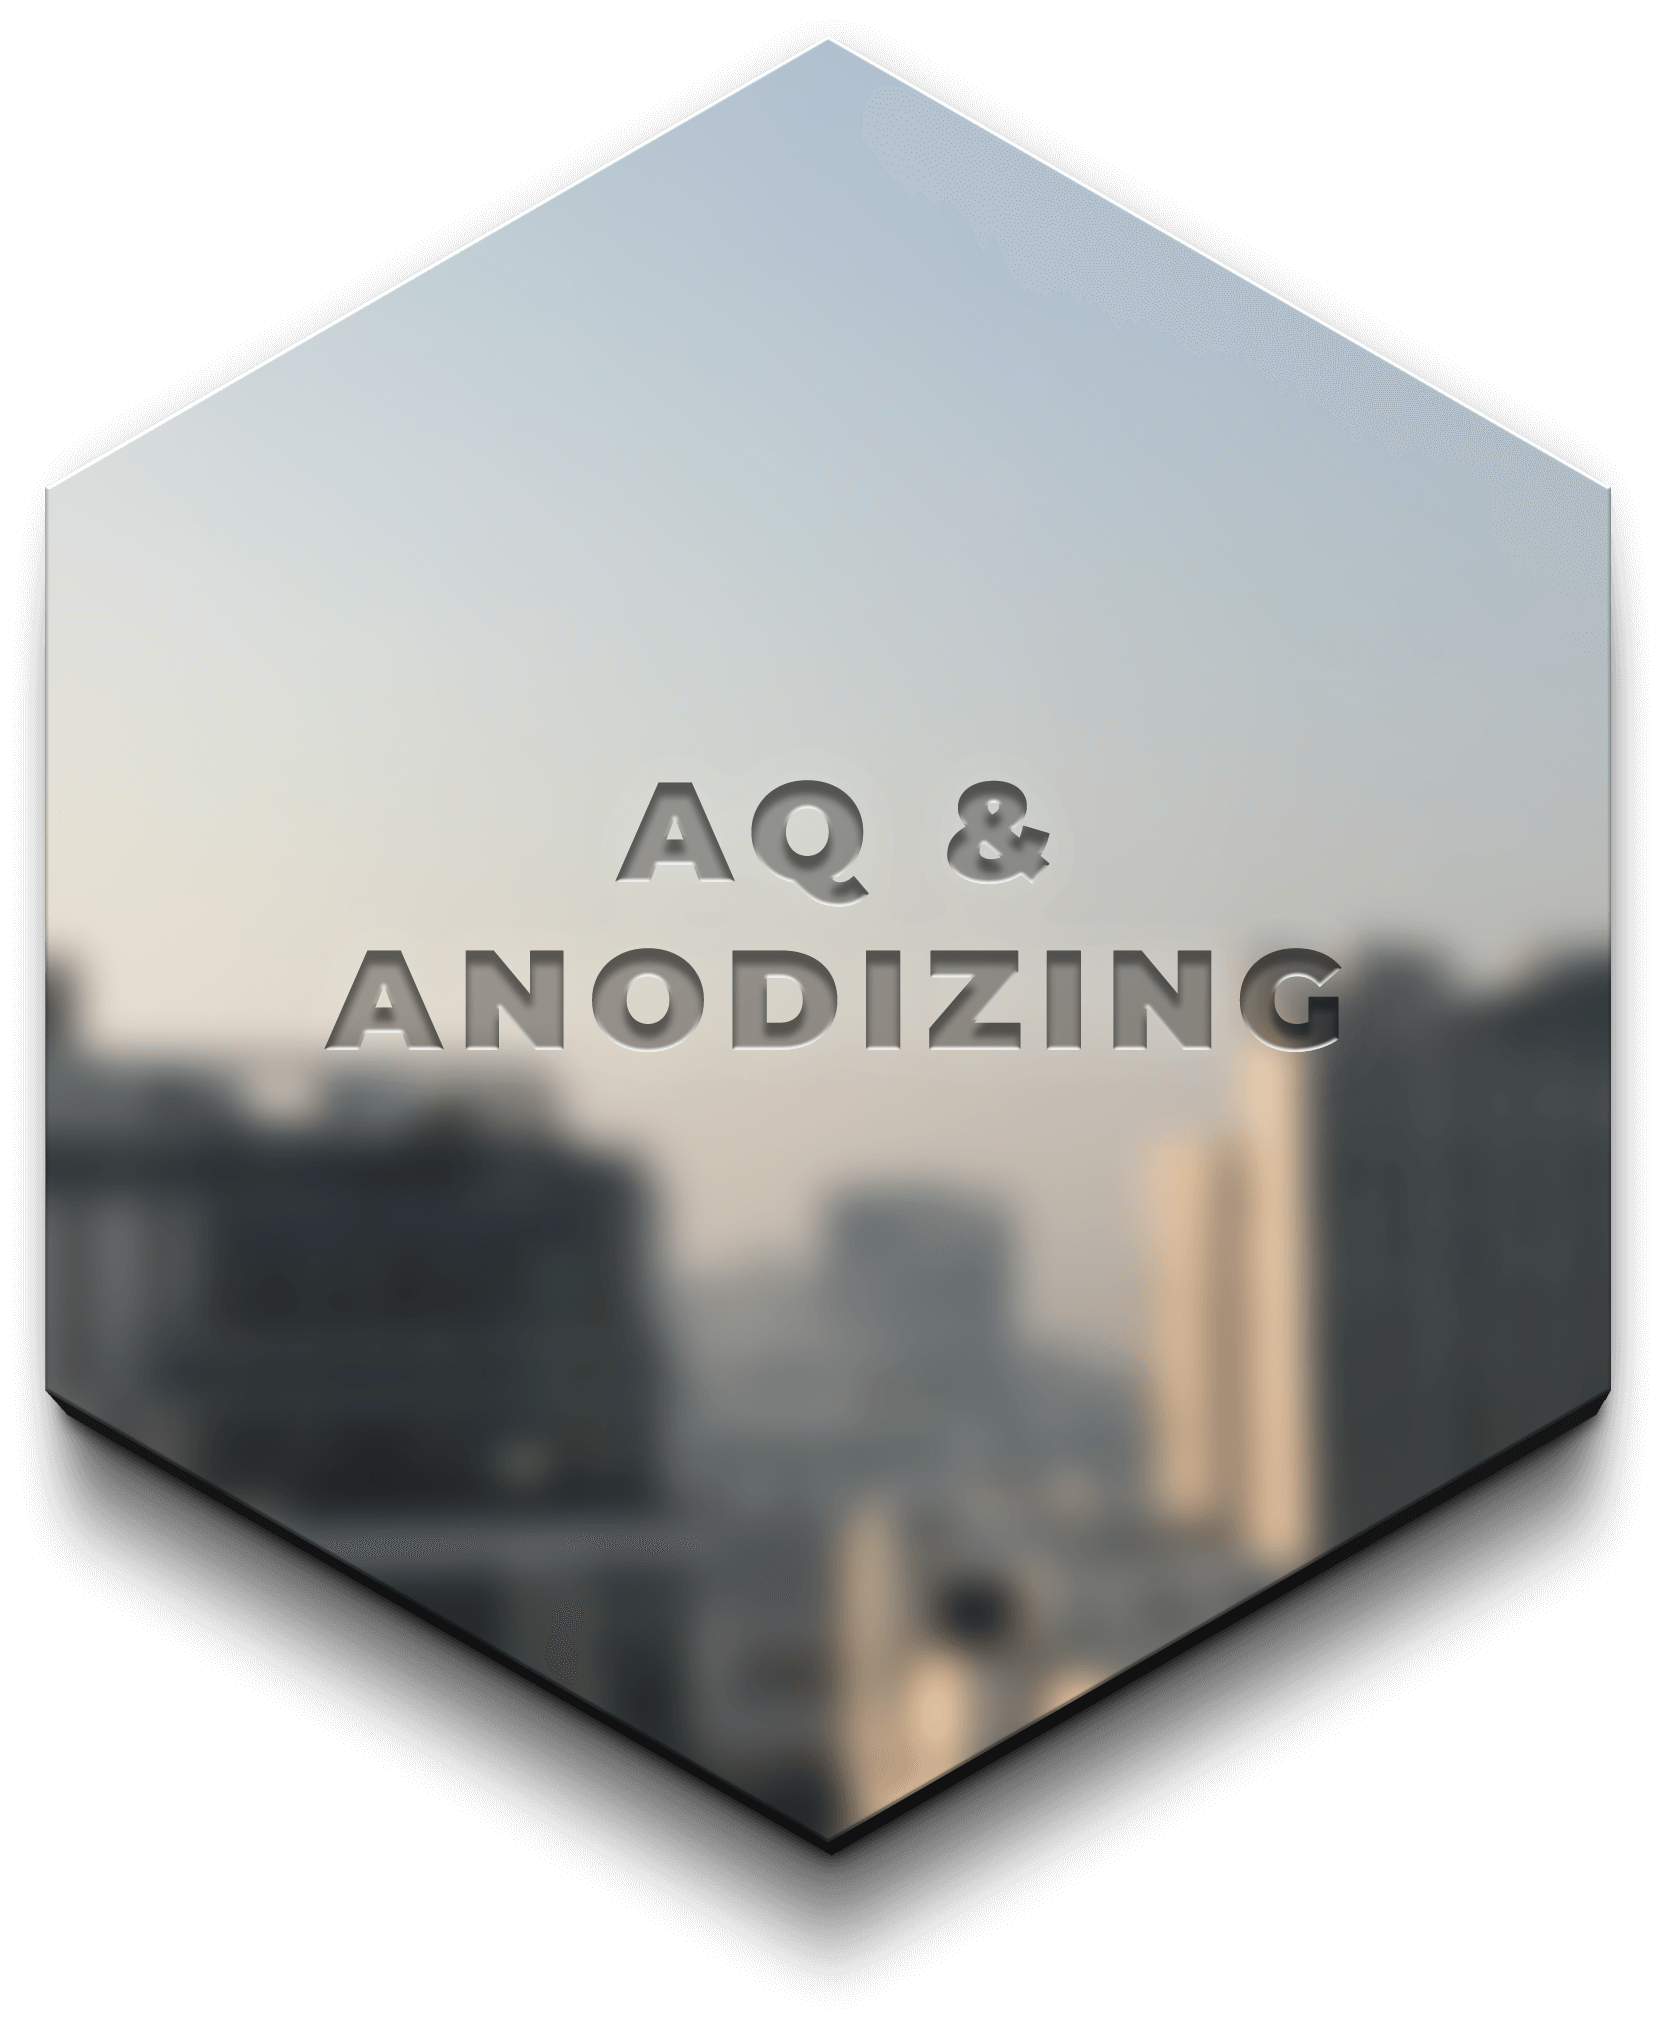 AQ & Anodizing